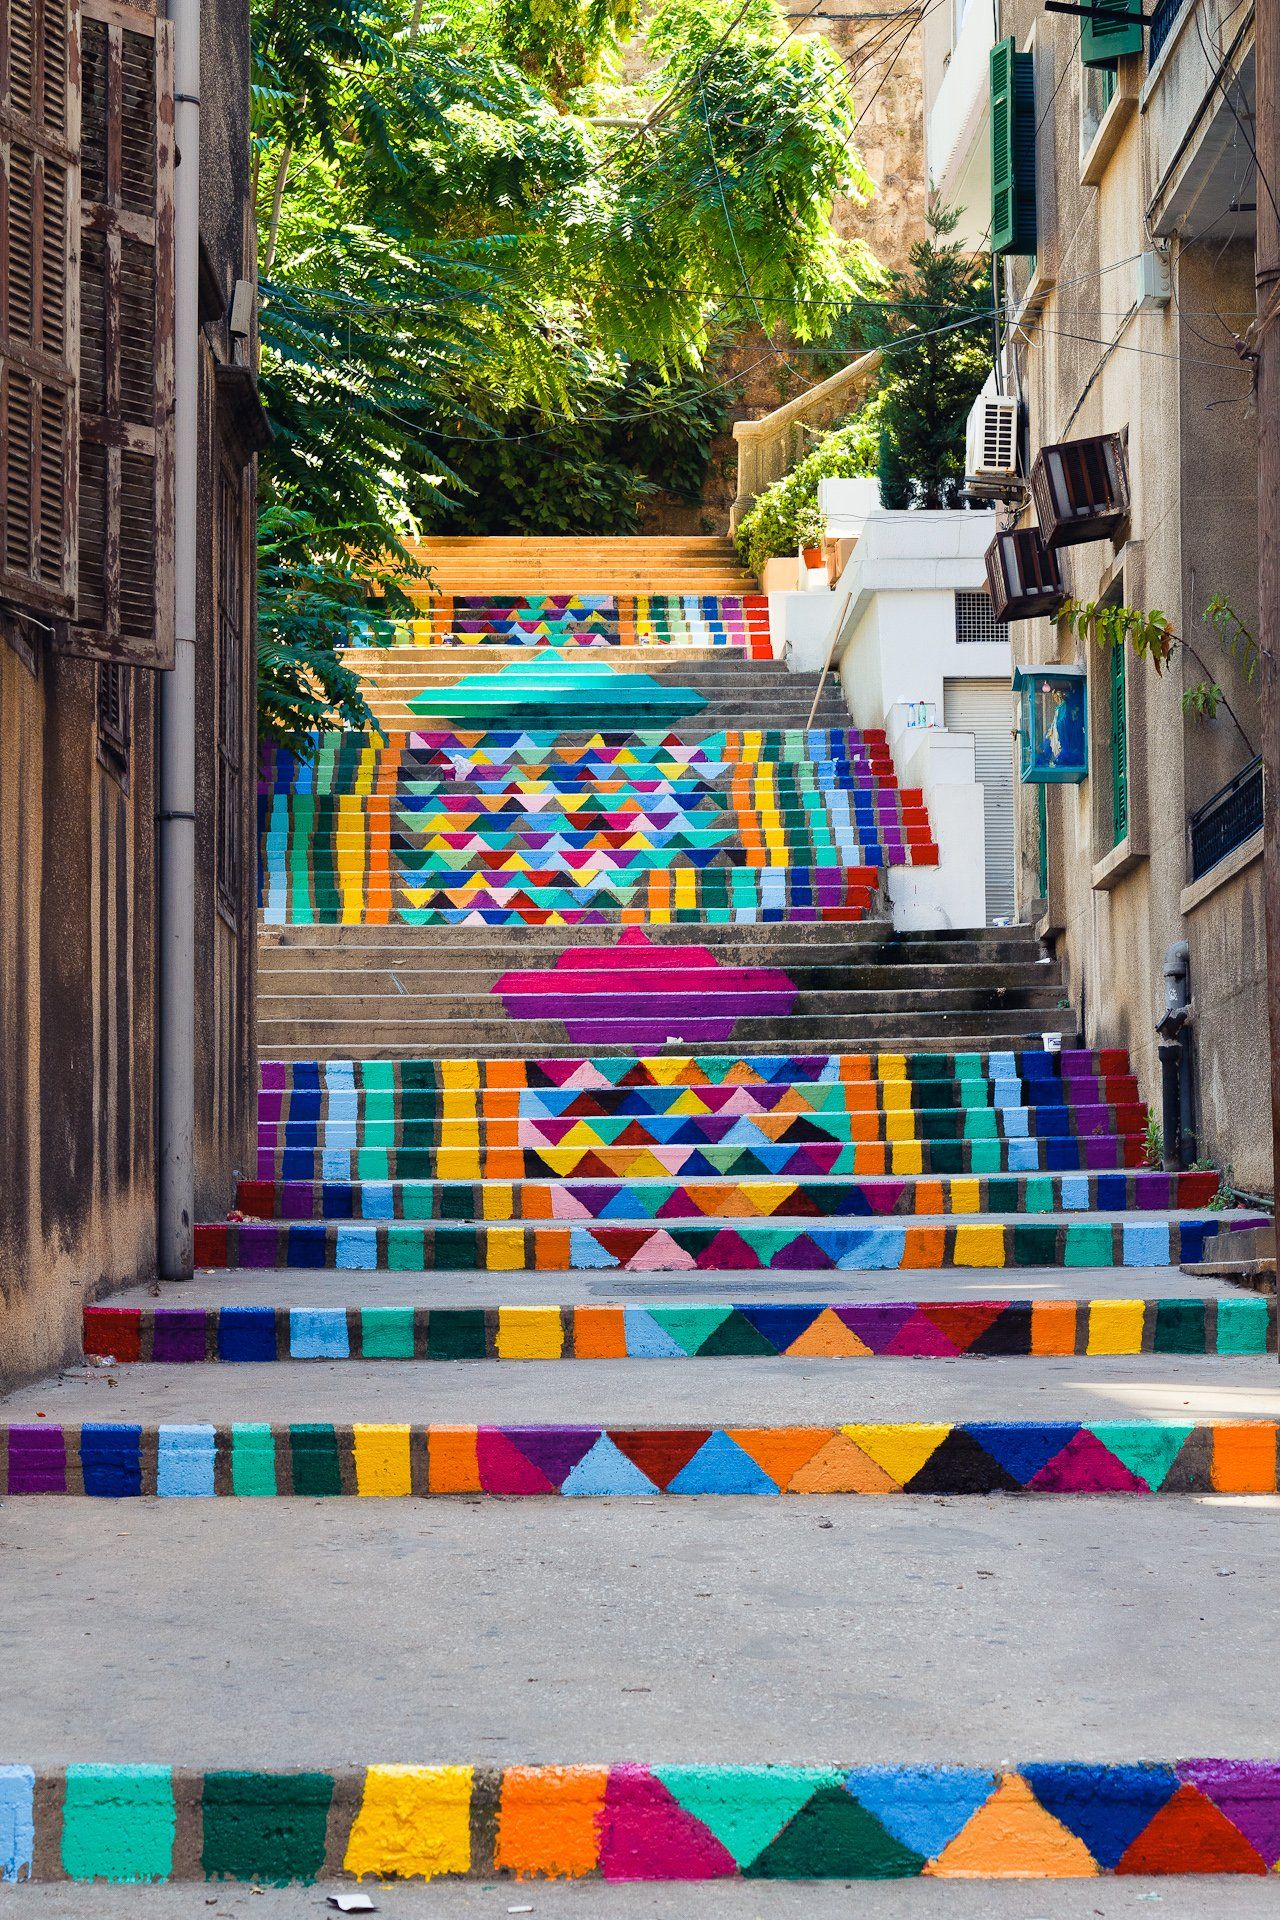 Rainbow street art steps in Beirut, Lebanon.